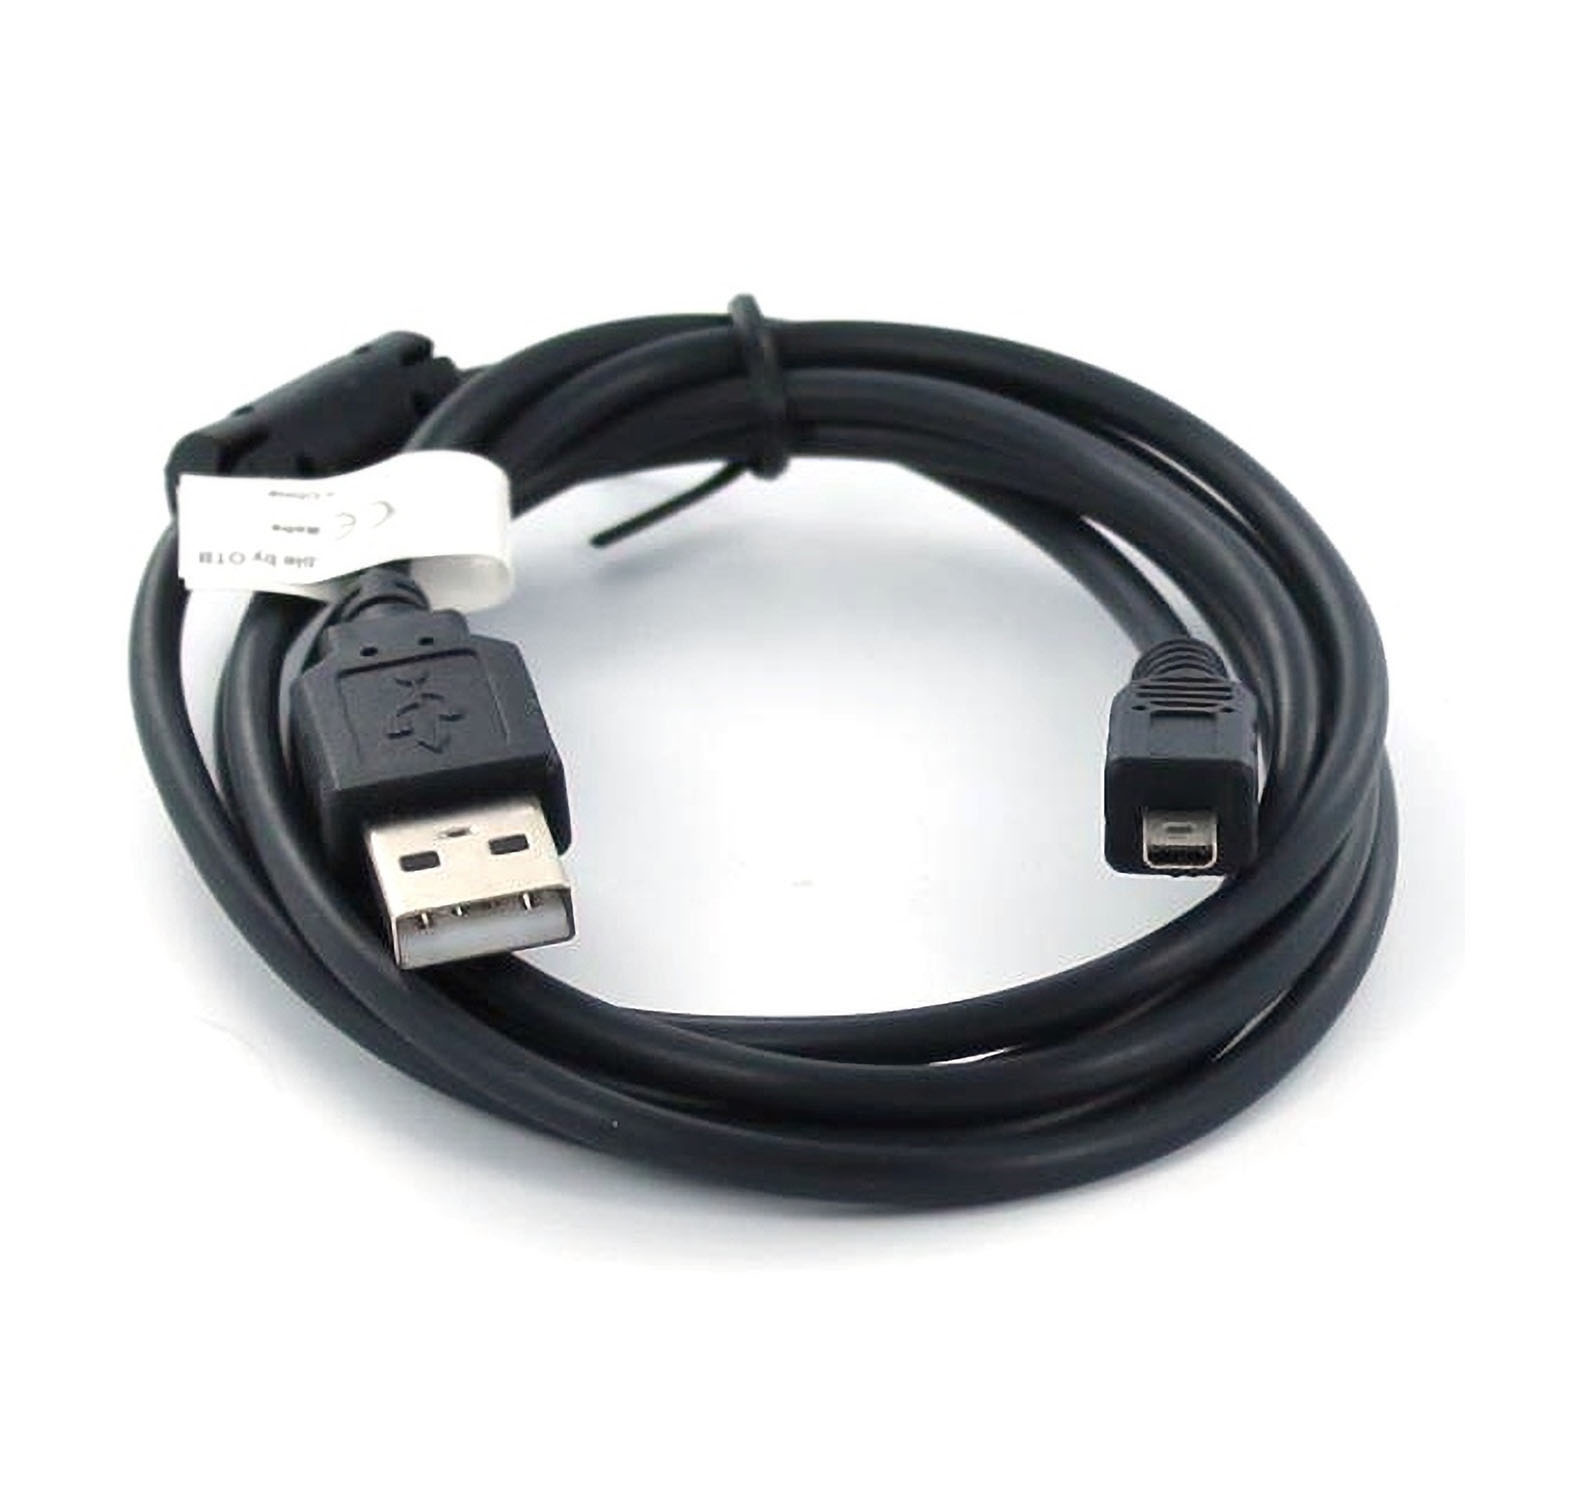 Ladekabel Datenkabel USB Kabel für Nikon Coolpix S2500 BLITZVERSAND ✔ OT7 